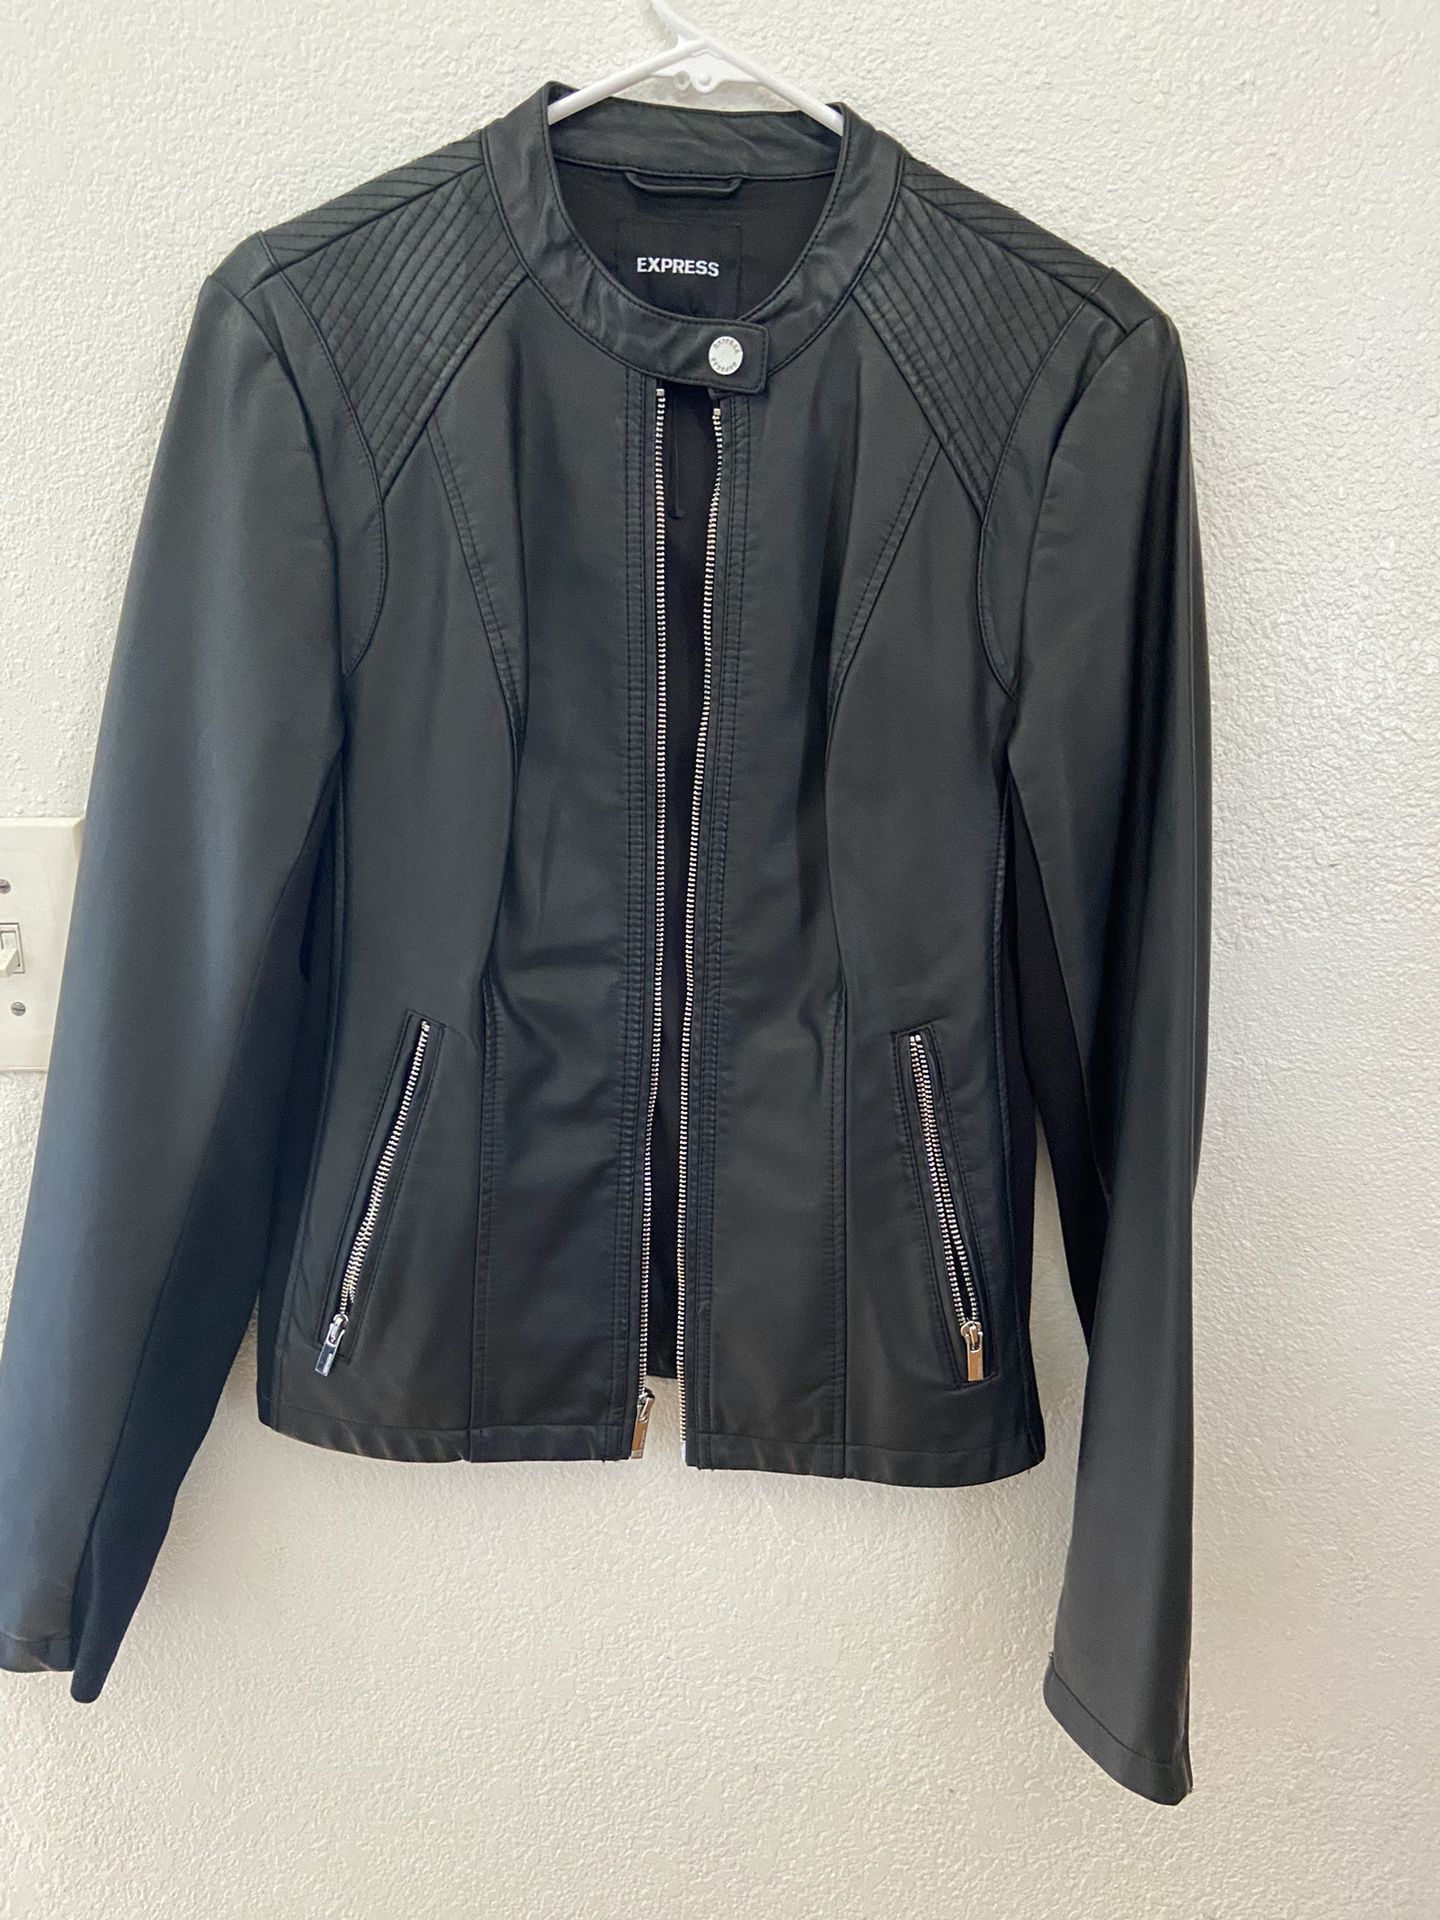 Express Leather Jacket 